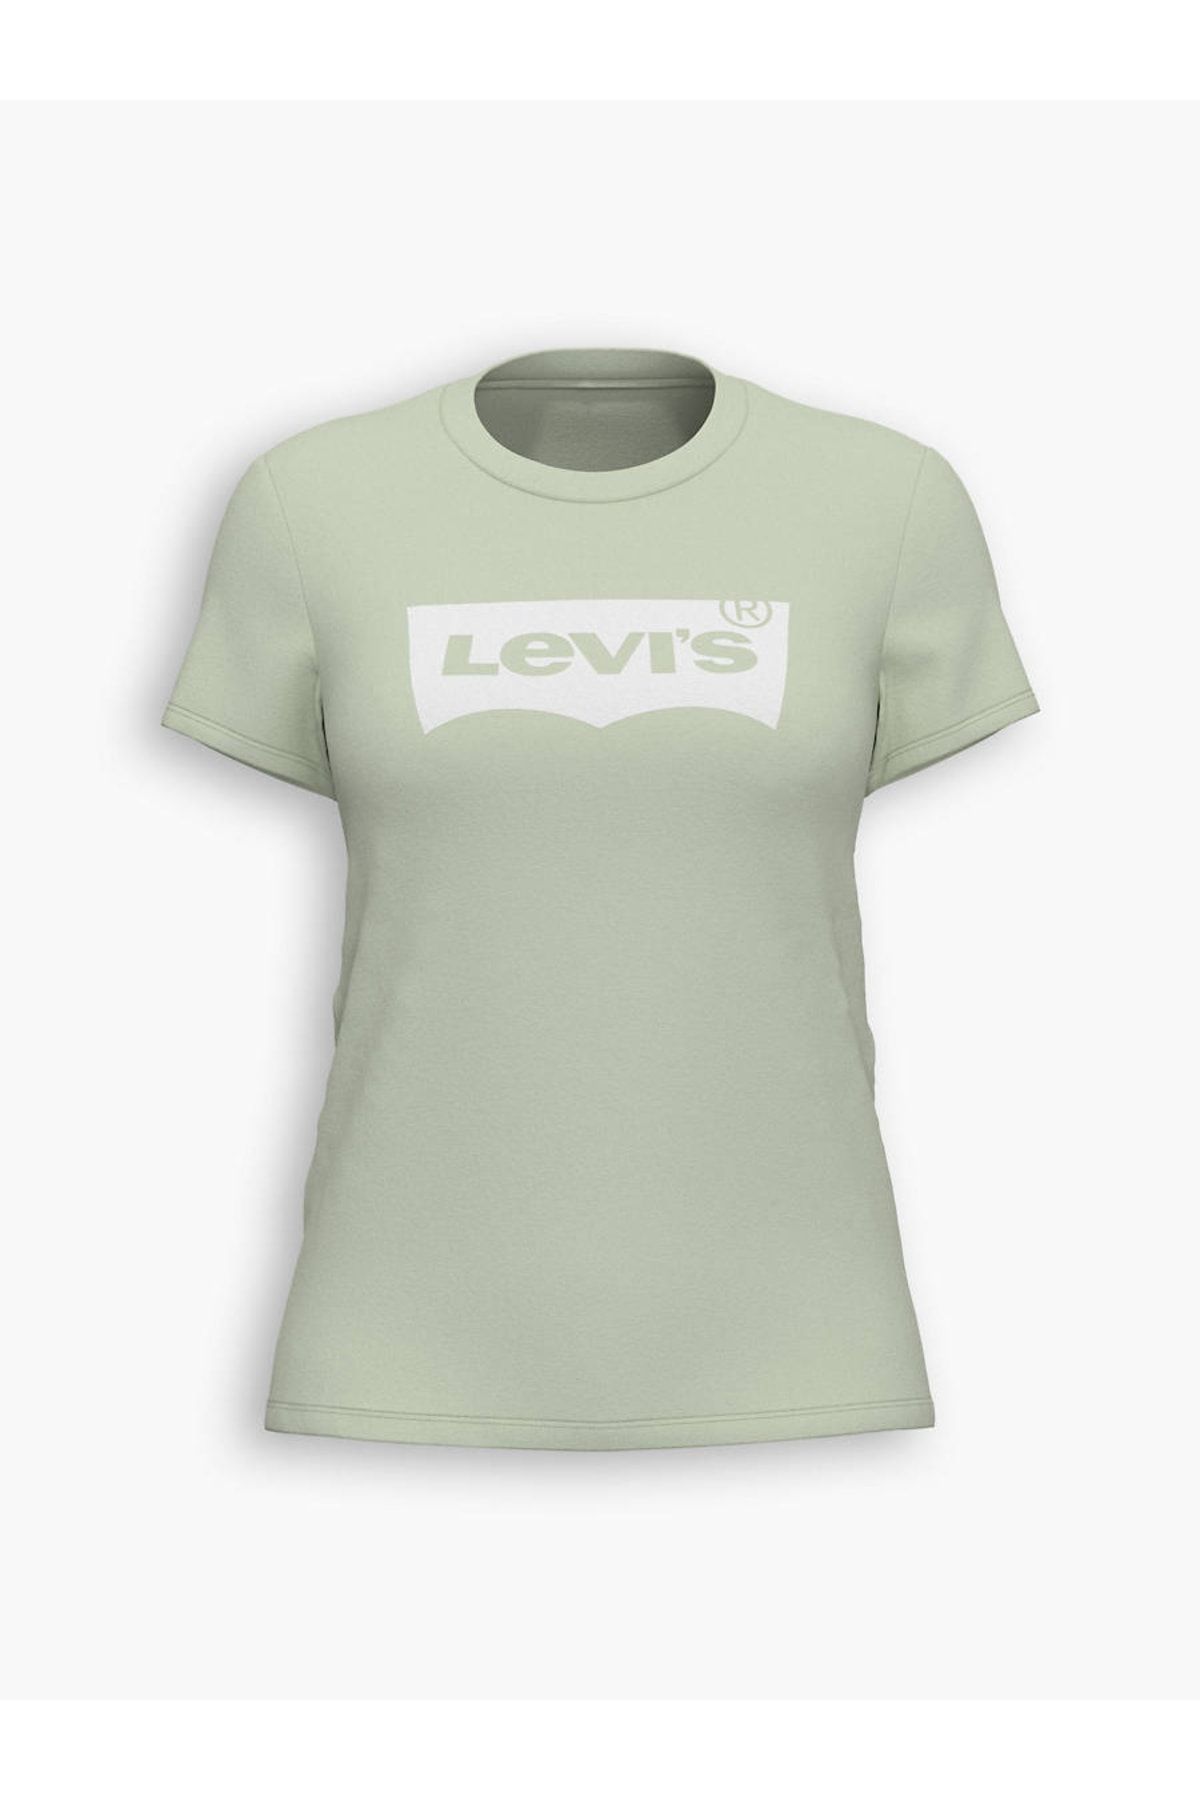 Levi's Tişört Kadın A2086-0171